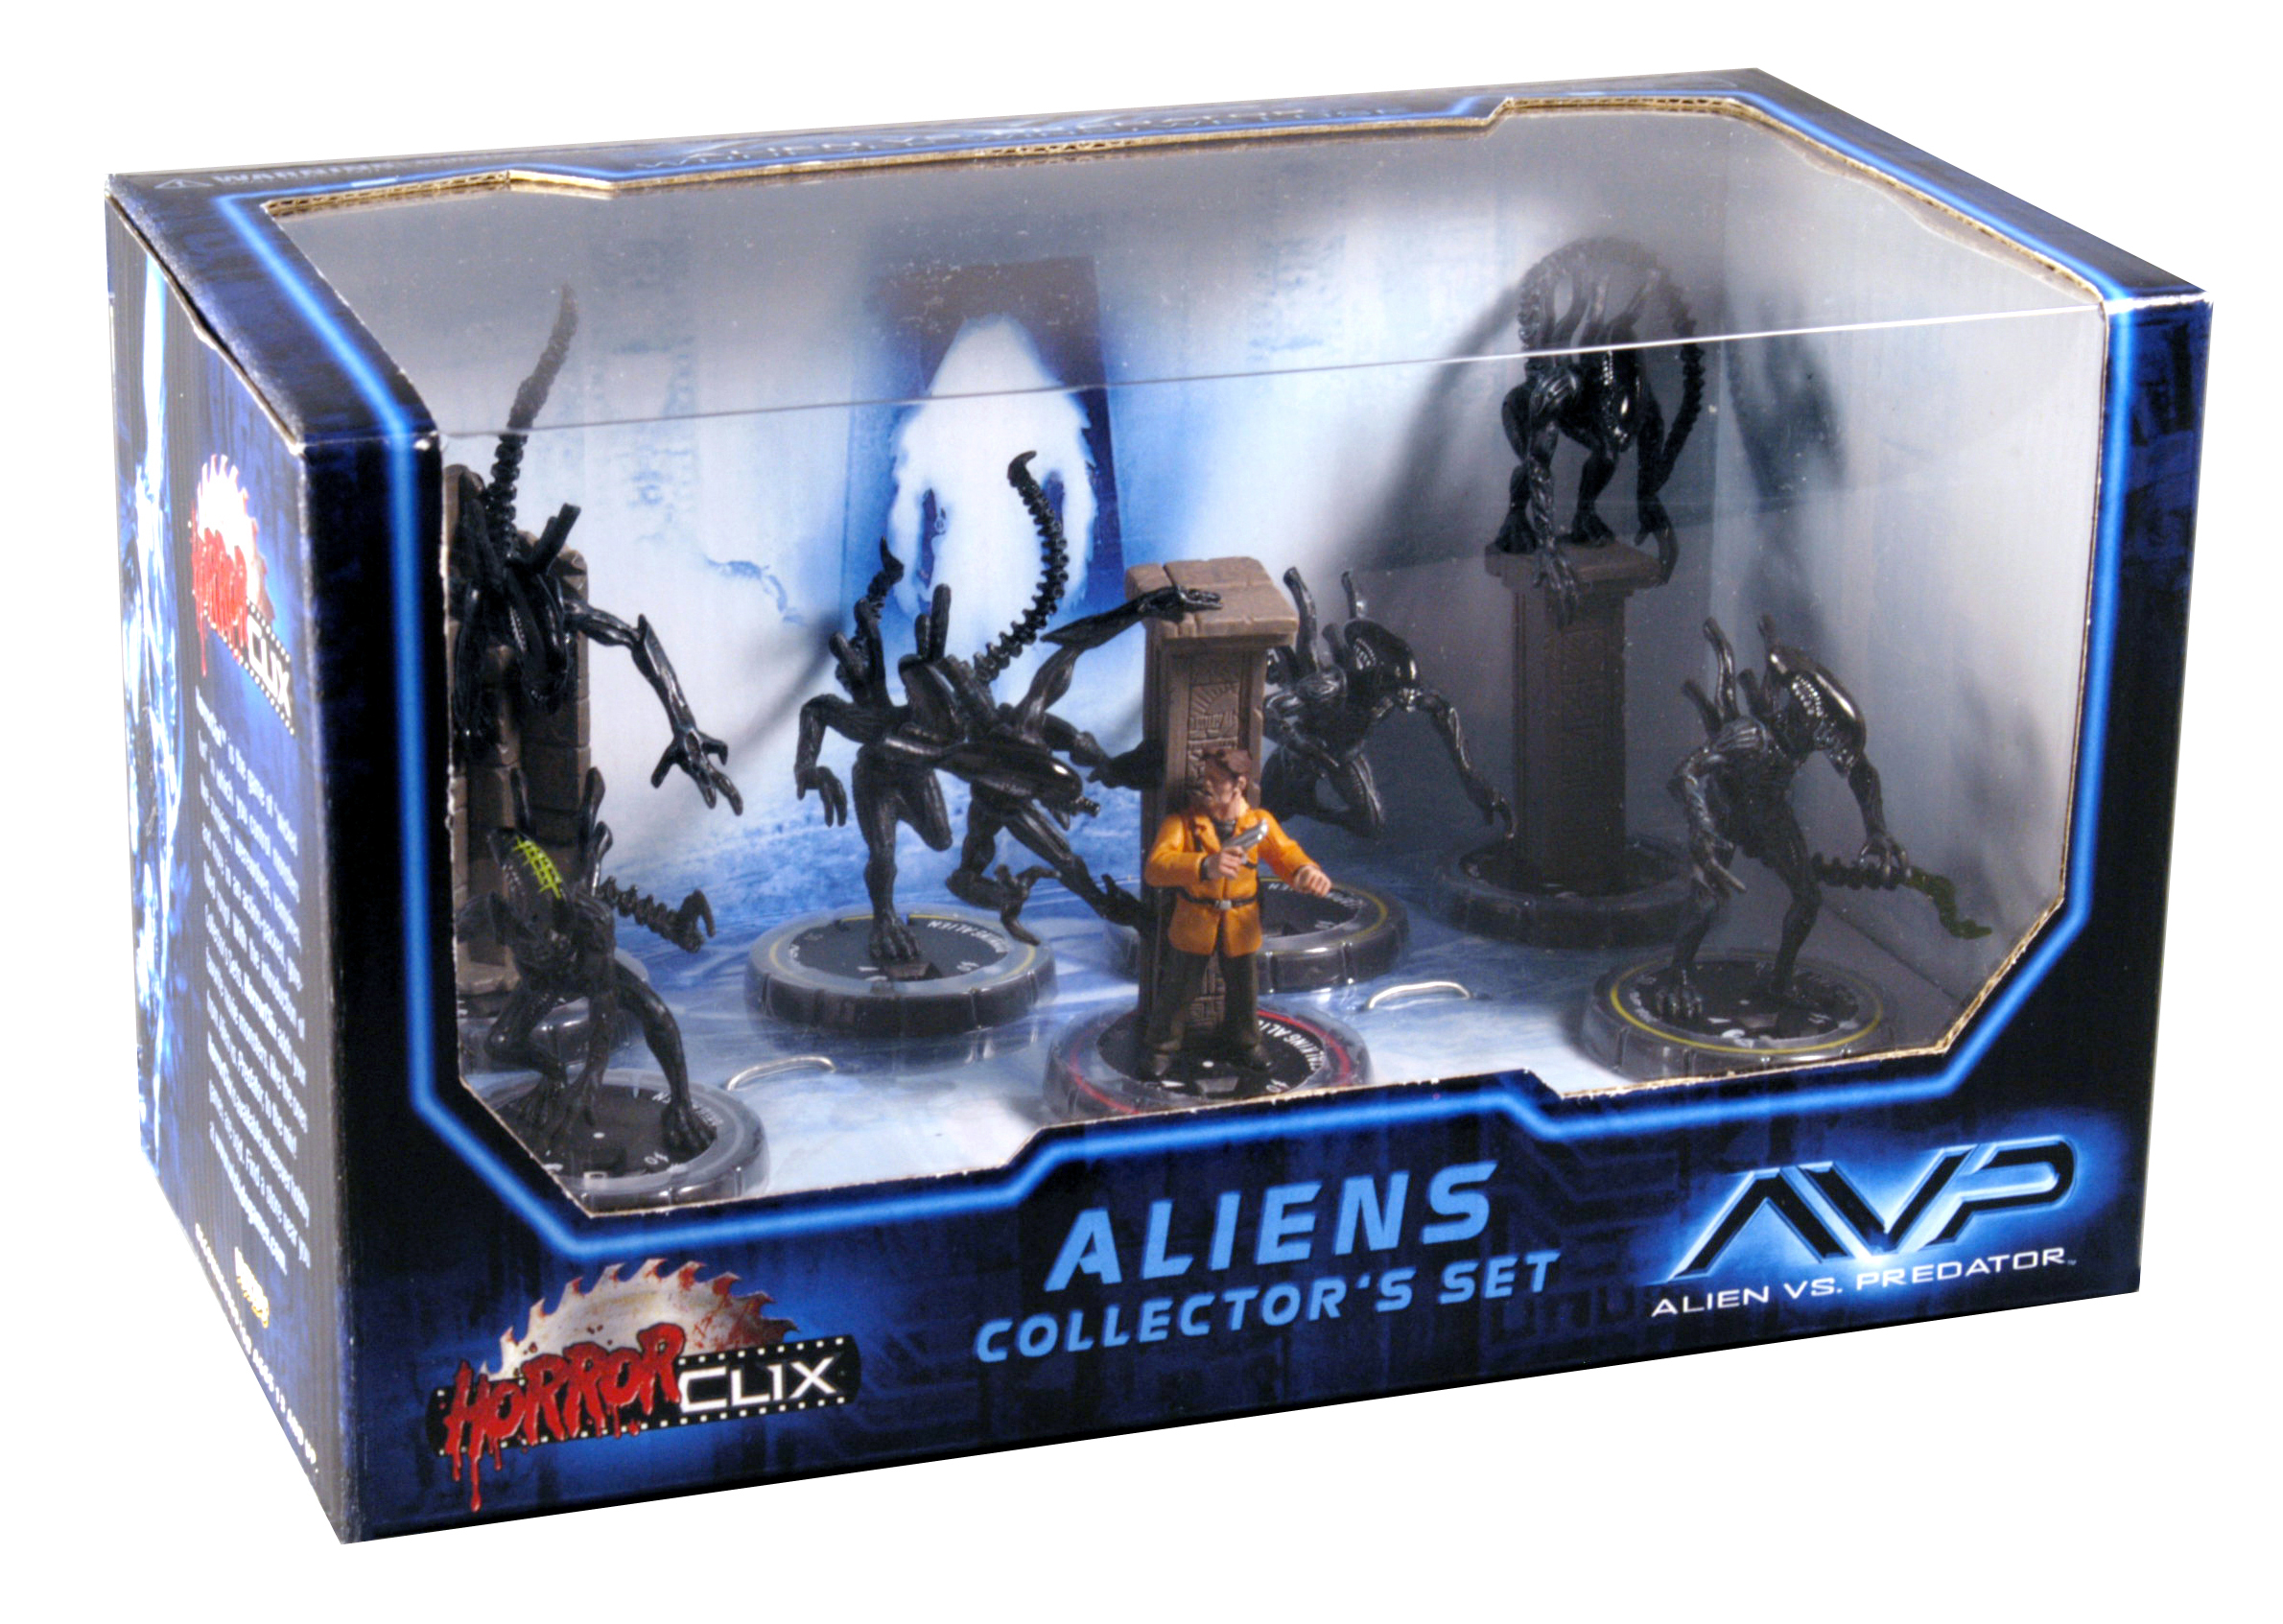 Aliens collection. Роботы настольная коллекционная игра. Эра Collector Set 1. Alien Set. Aliens collection game.